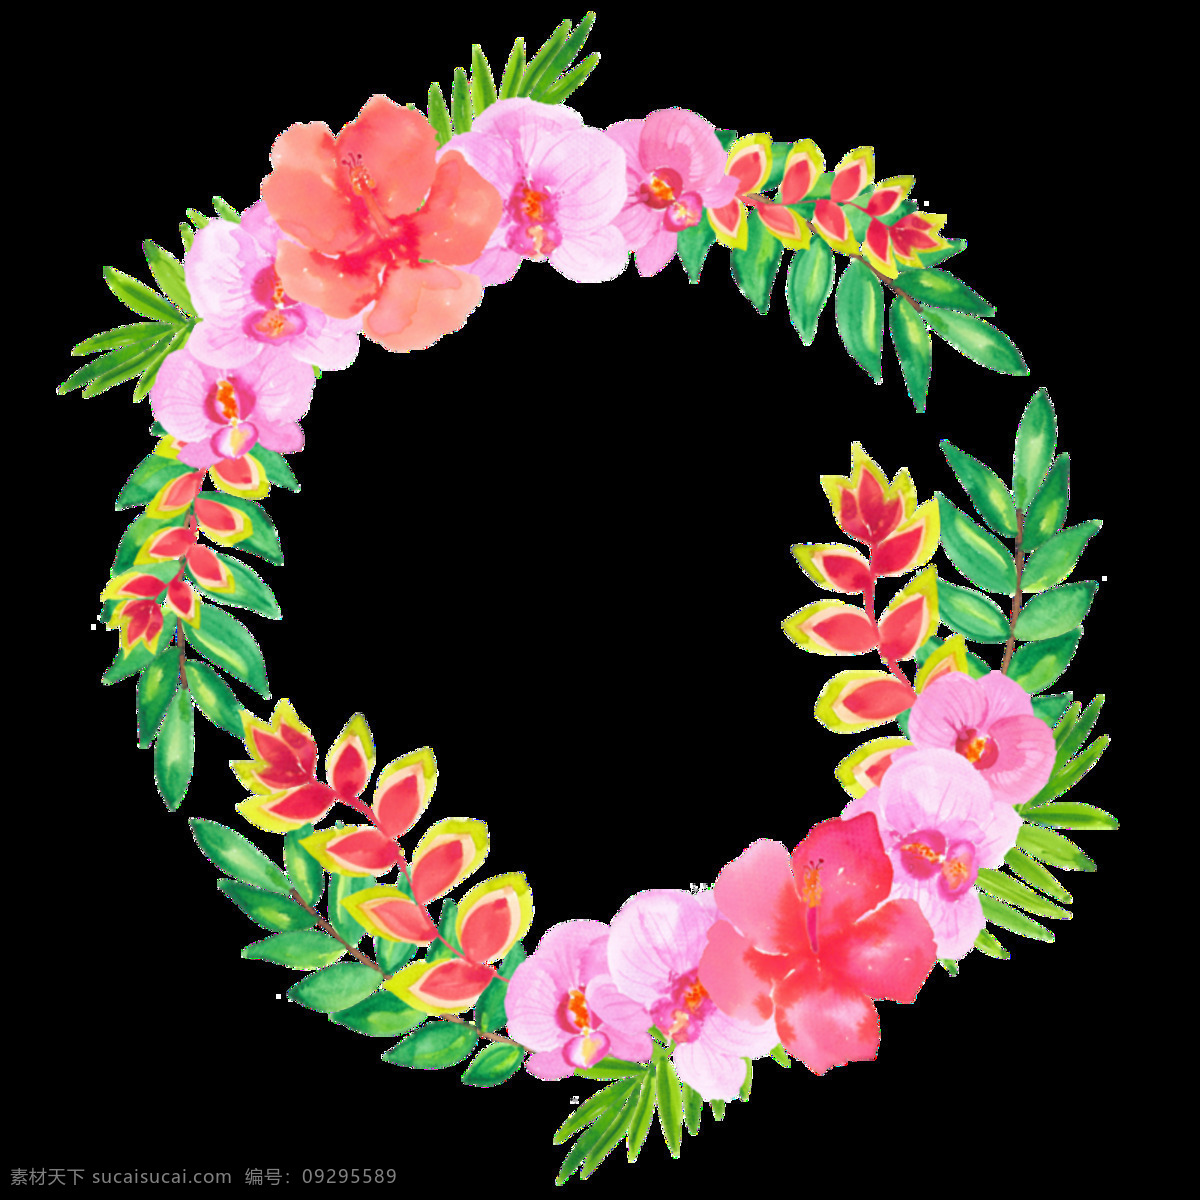 清新 深 粉色 水彩 手绘 花环 装饰 元素 淡绿色树叶 粉色花朵 花瓣 花环图案 清新风格